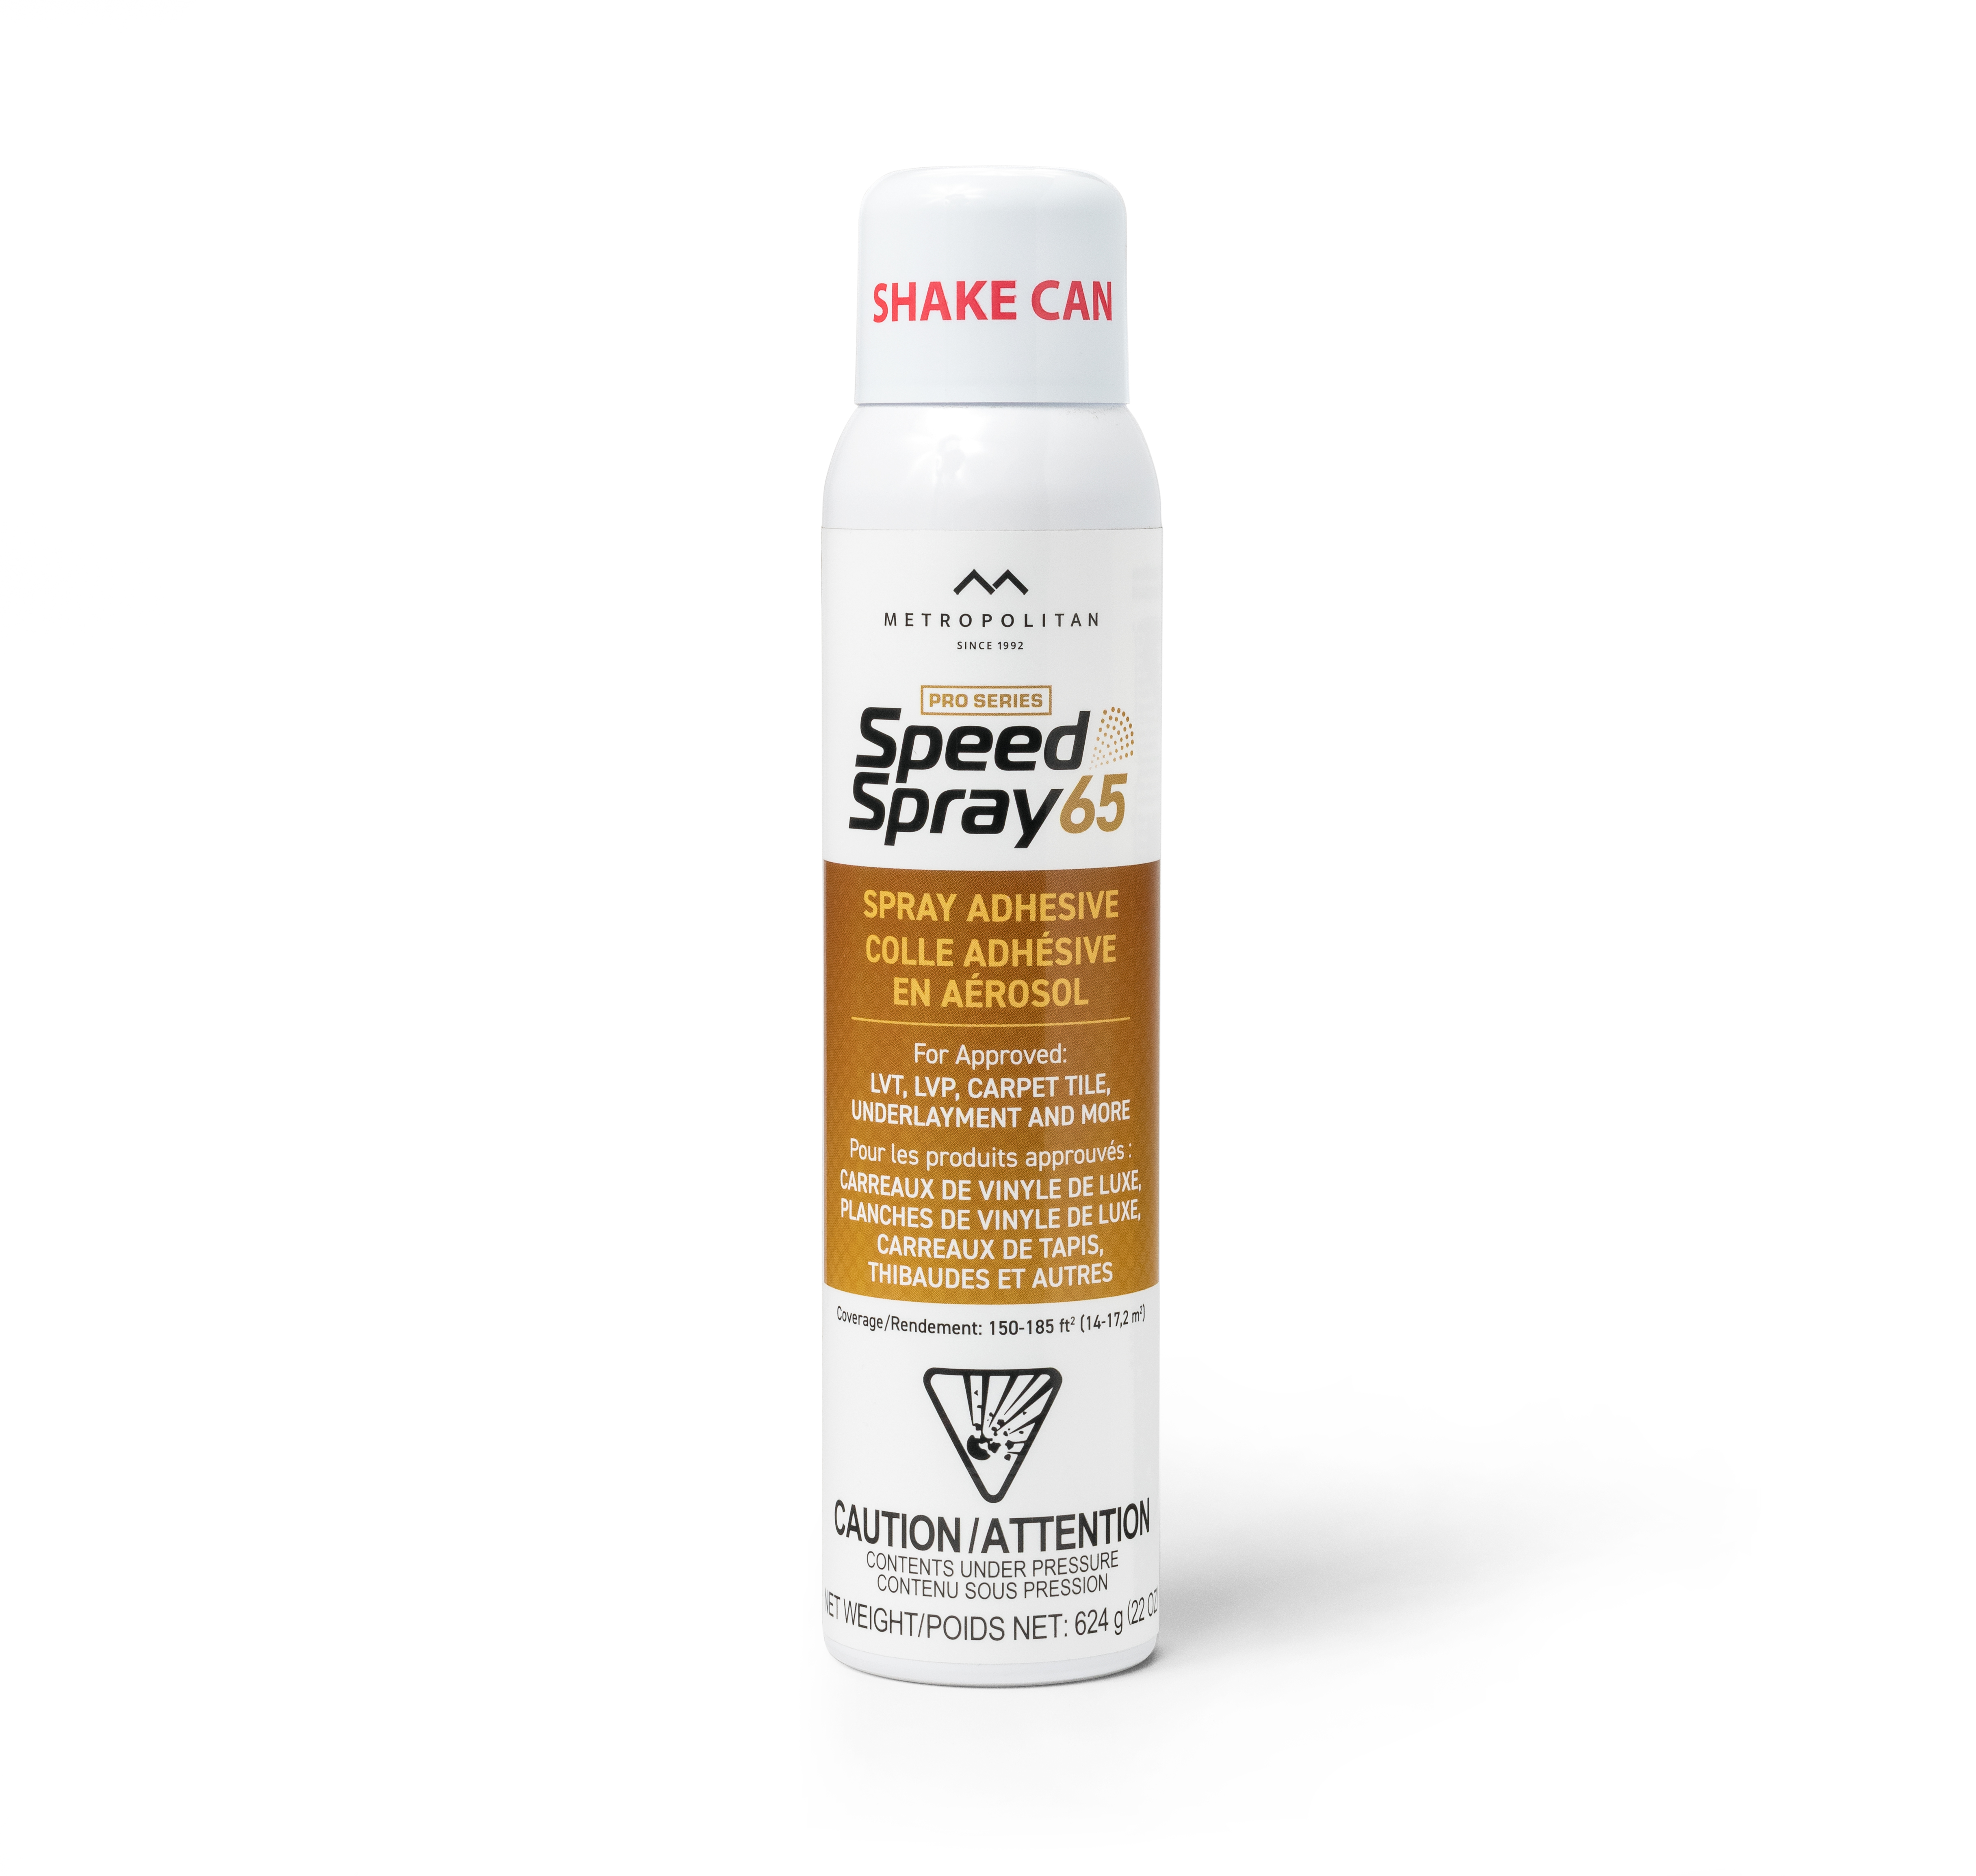 Speed Spray65 Spray Adhesive